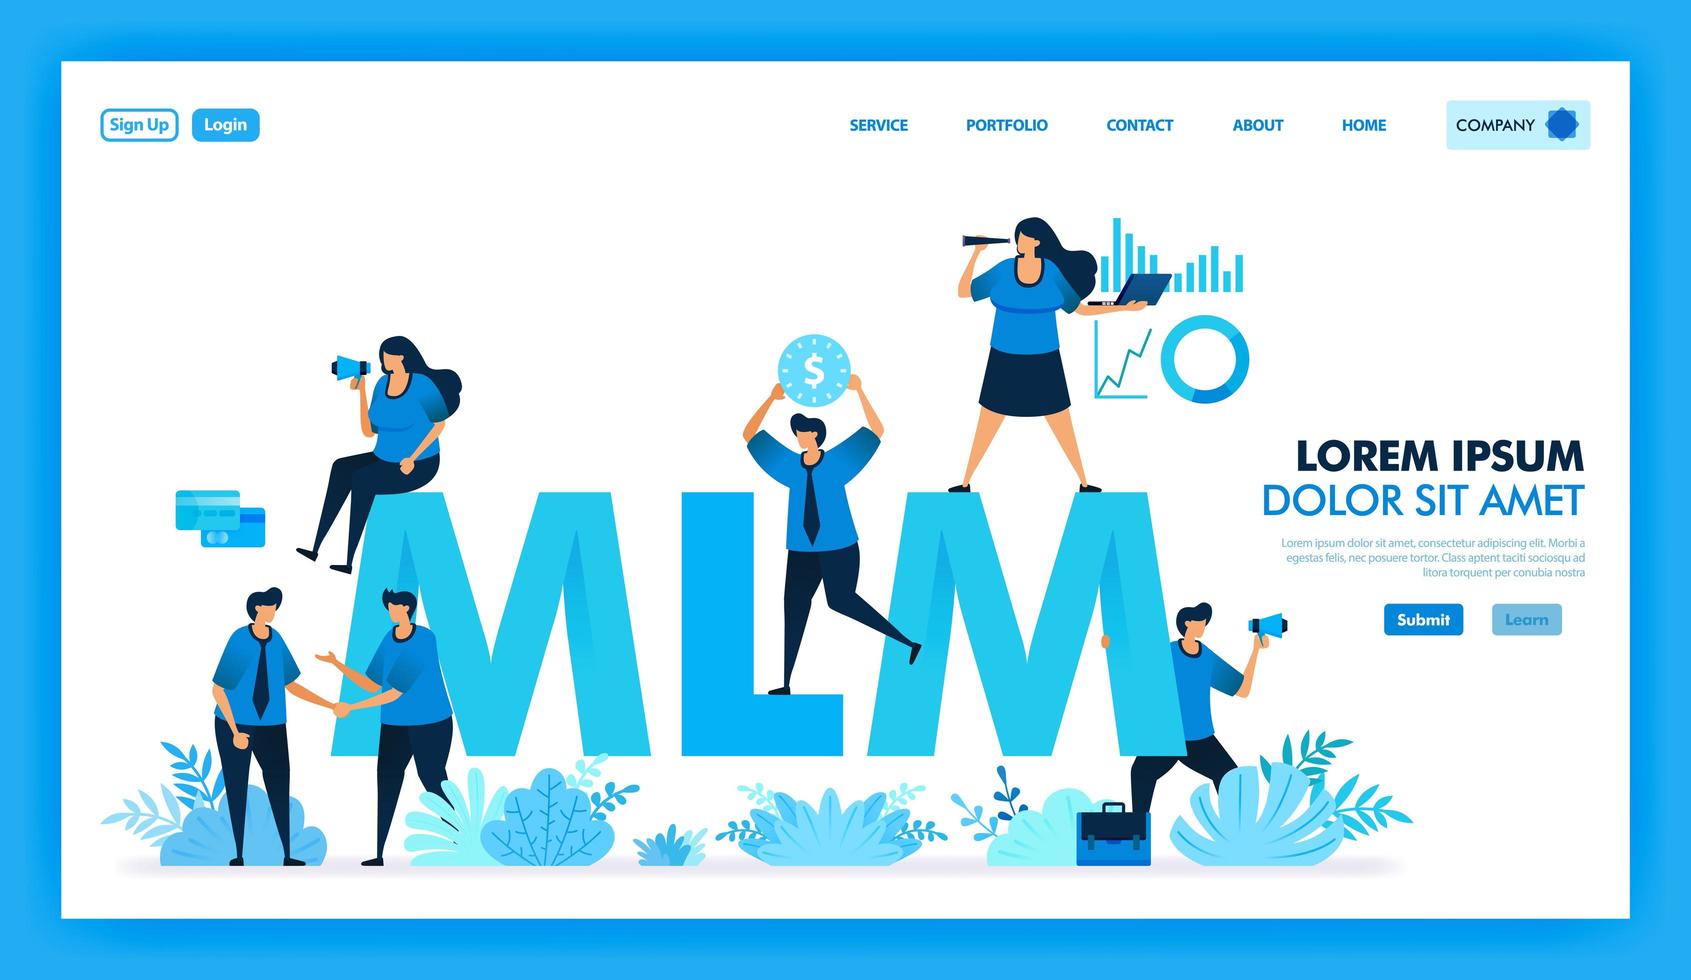 mlm affiliate program är att få många downline och få vinst. produktvärde i marknadsföringsnivå på flera nivåer söker nya kunder och återförsäljare för att förbättra företaget. platt illustration vektor design.